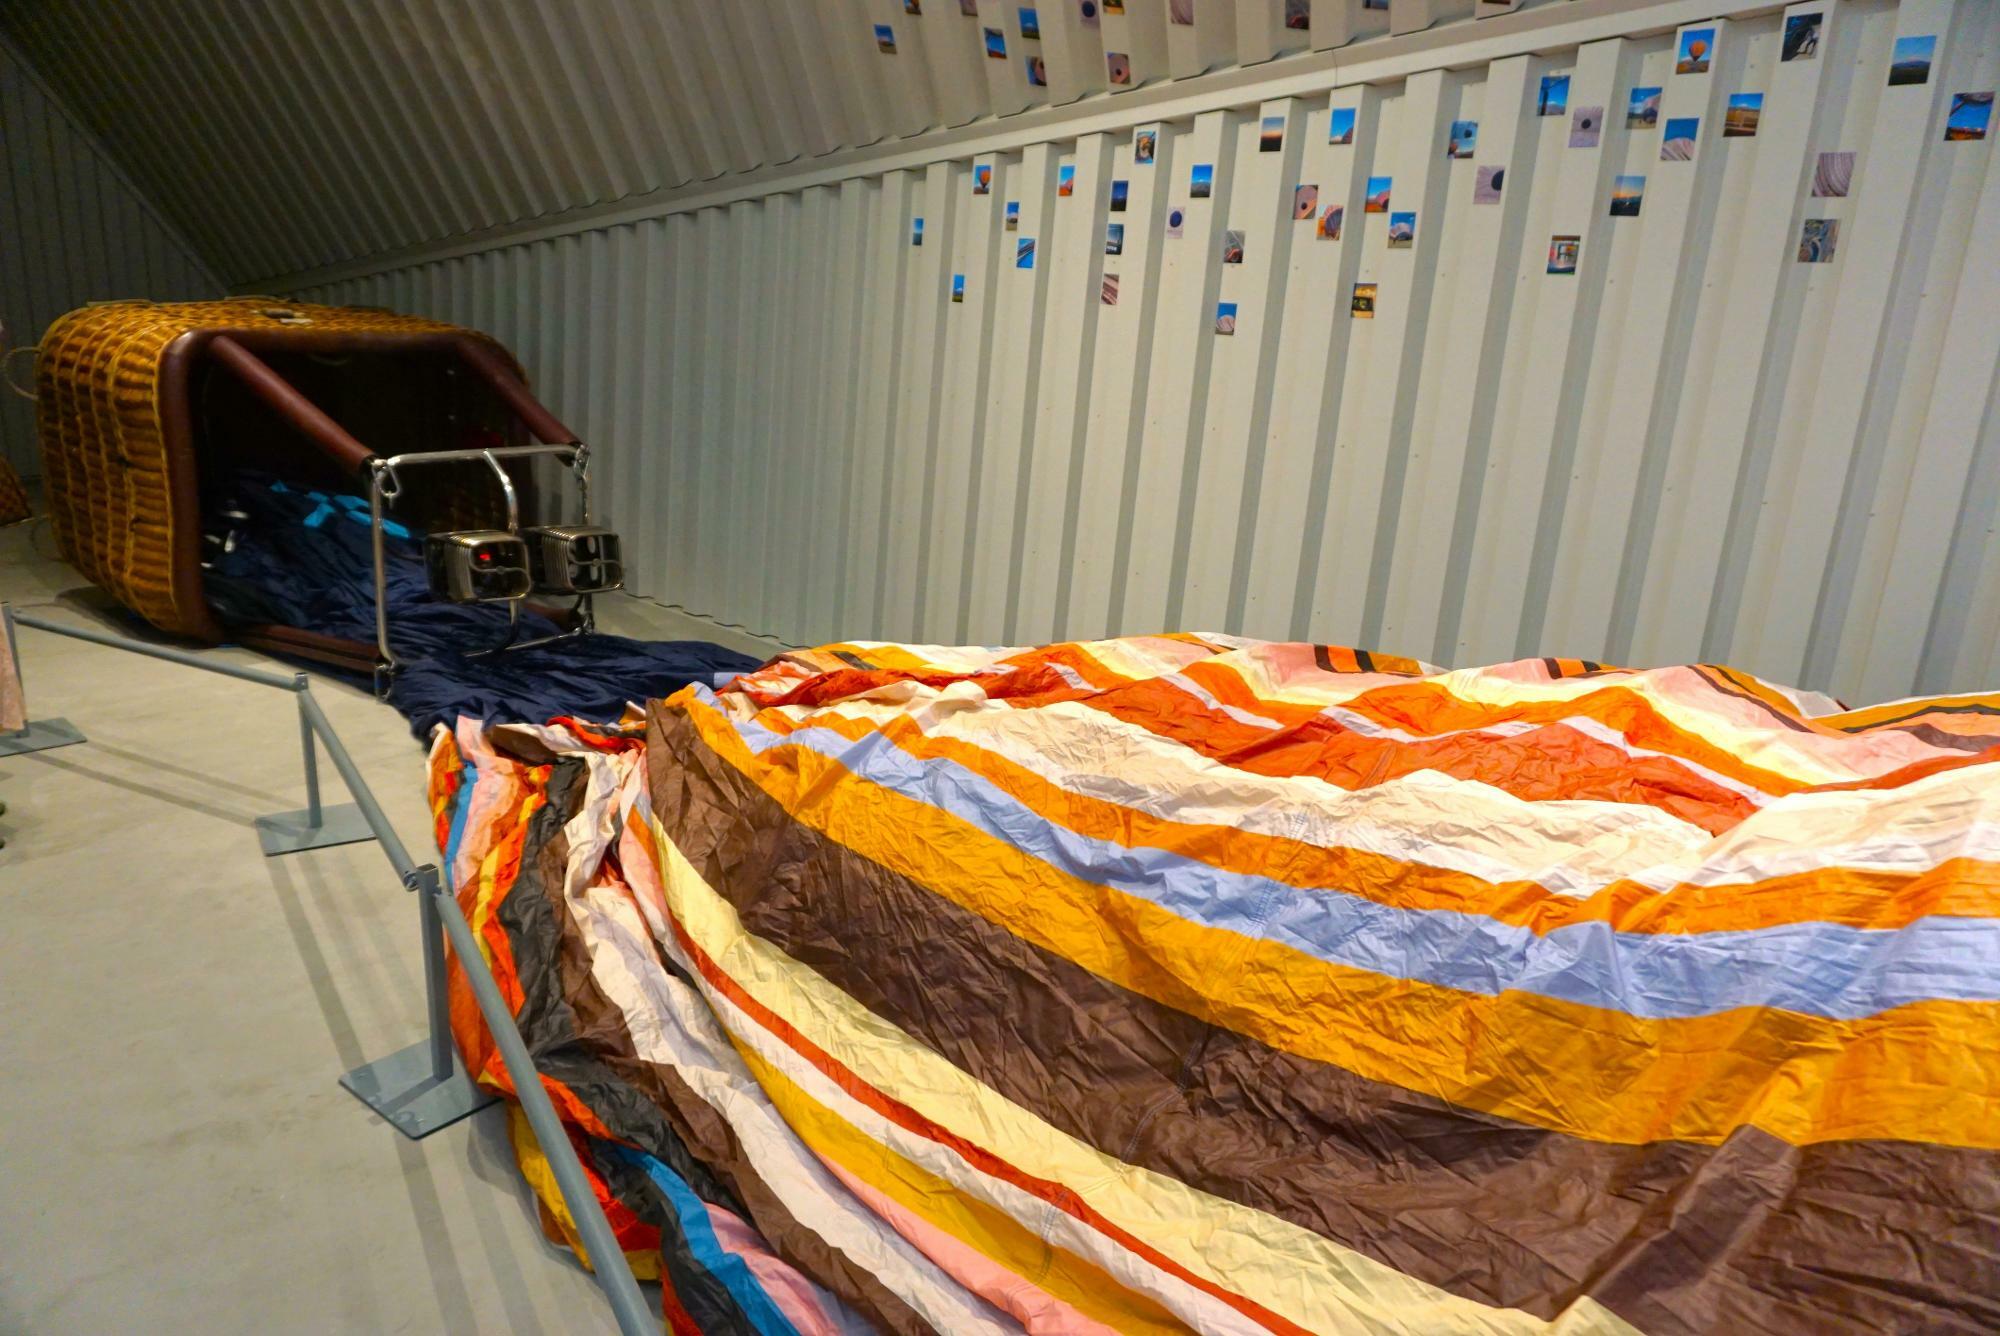 英国最古の気球工房で職人たちが約200時間かけて縫いしたそう。